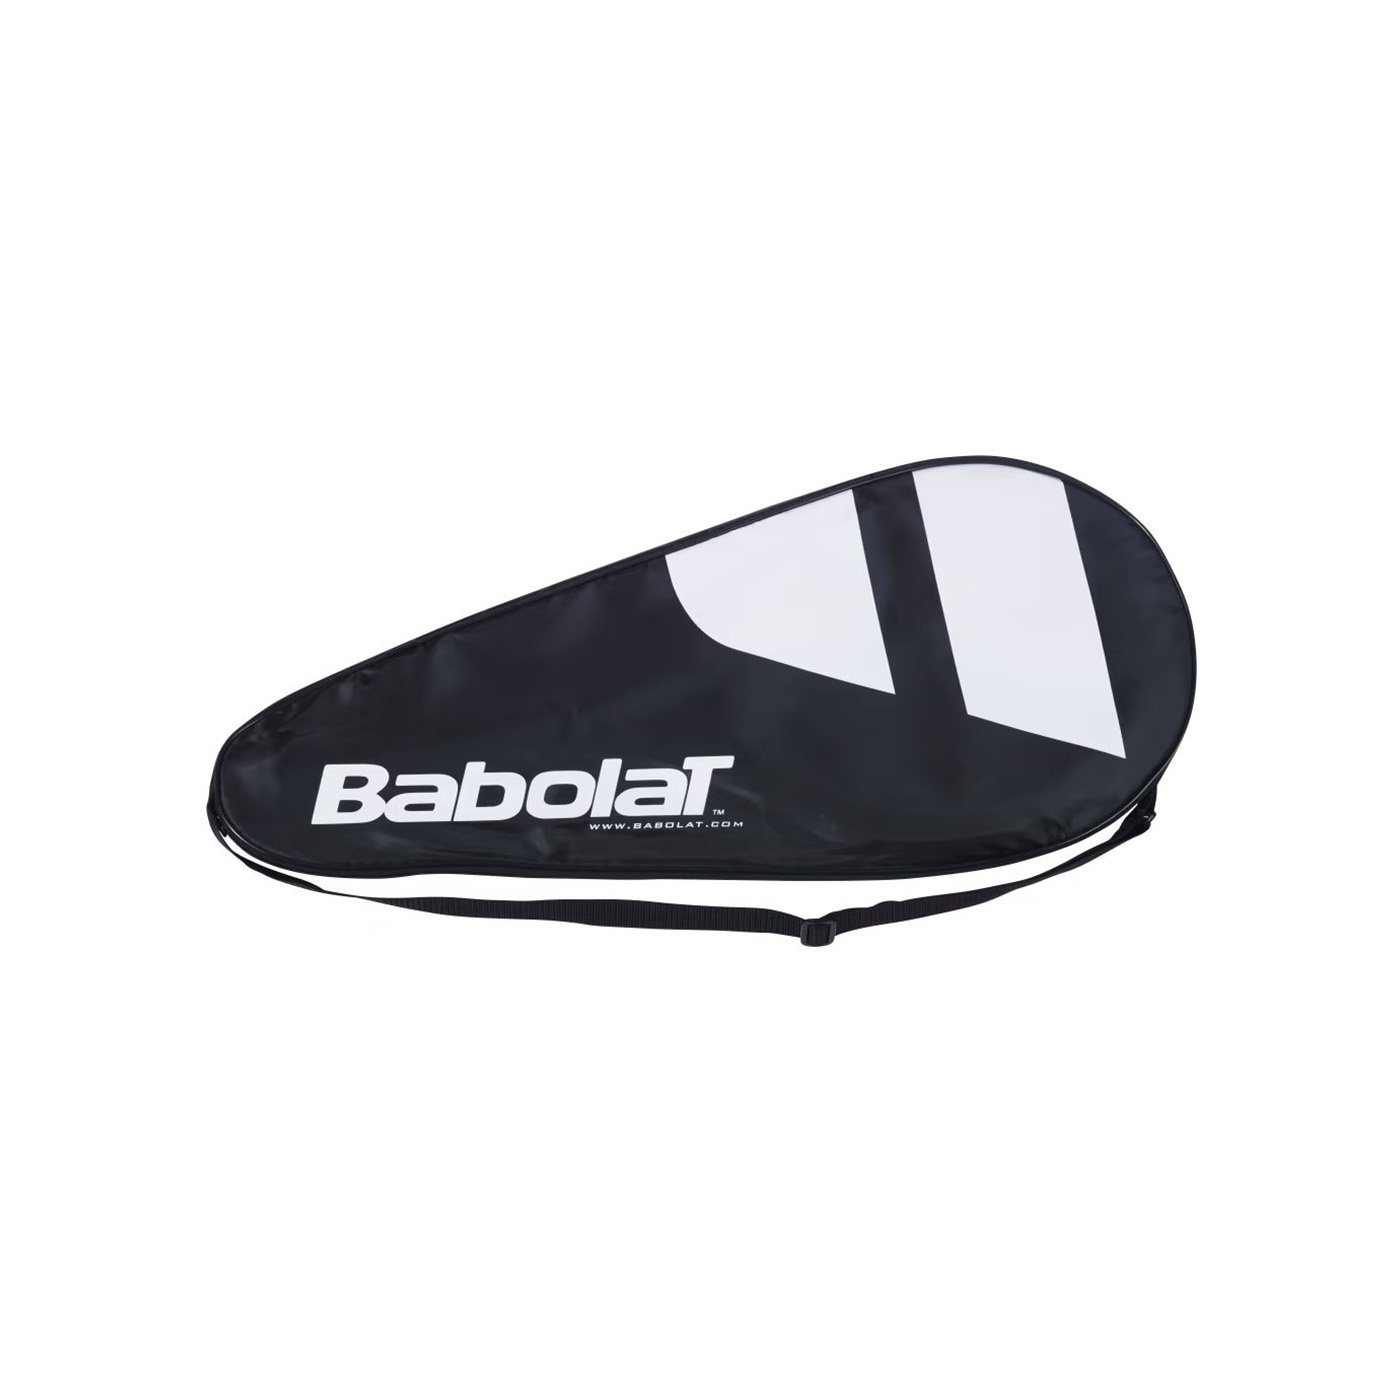 Babolat Expert Cover Tenis Raketi Kılıfı - Siyah - 1